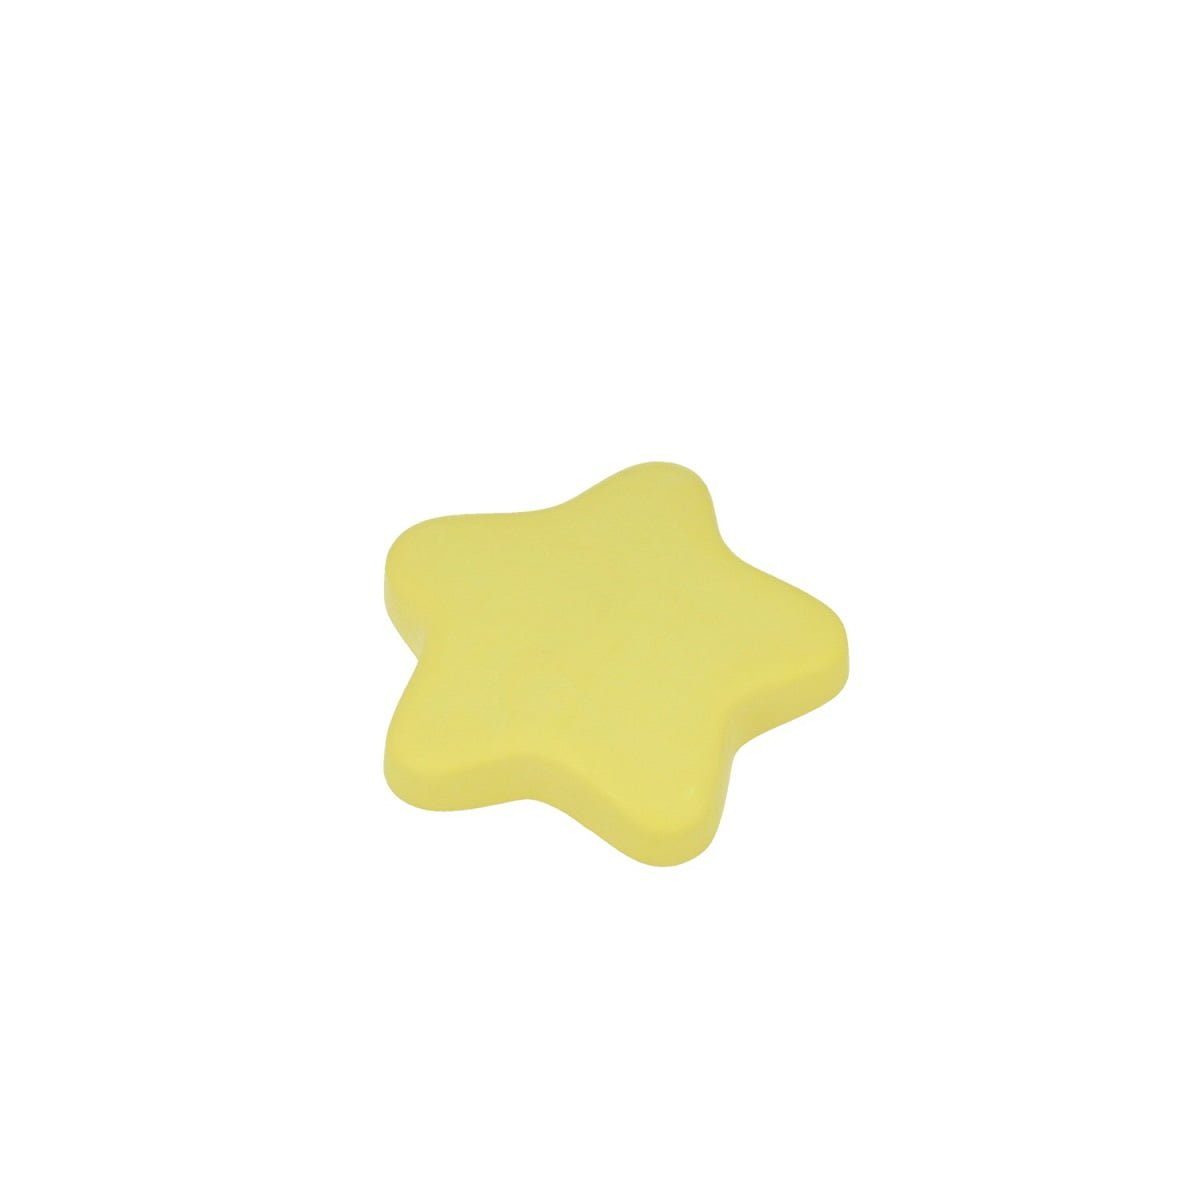 Möbelbeschlag Möbelknopf Kinderzimmerknopf Modell Stern Gelb